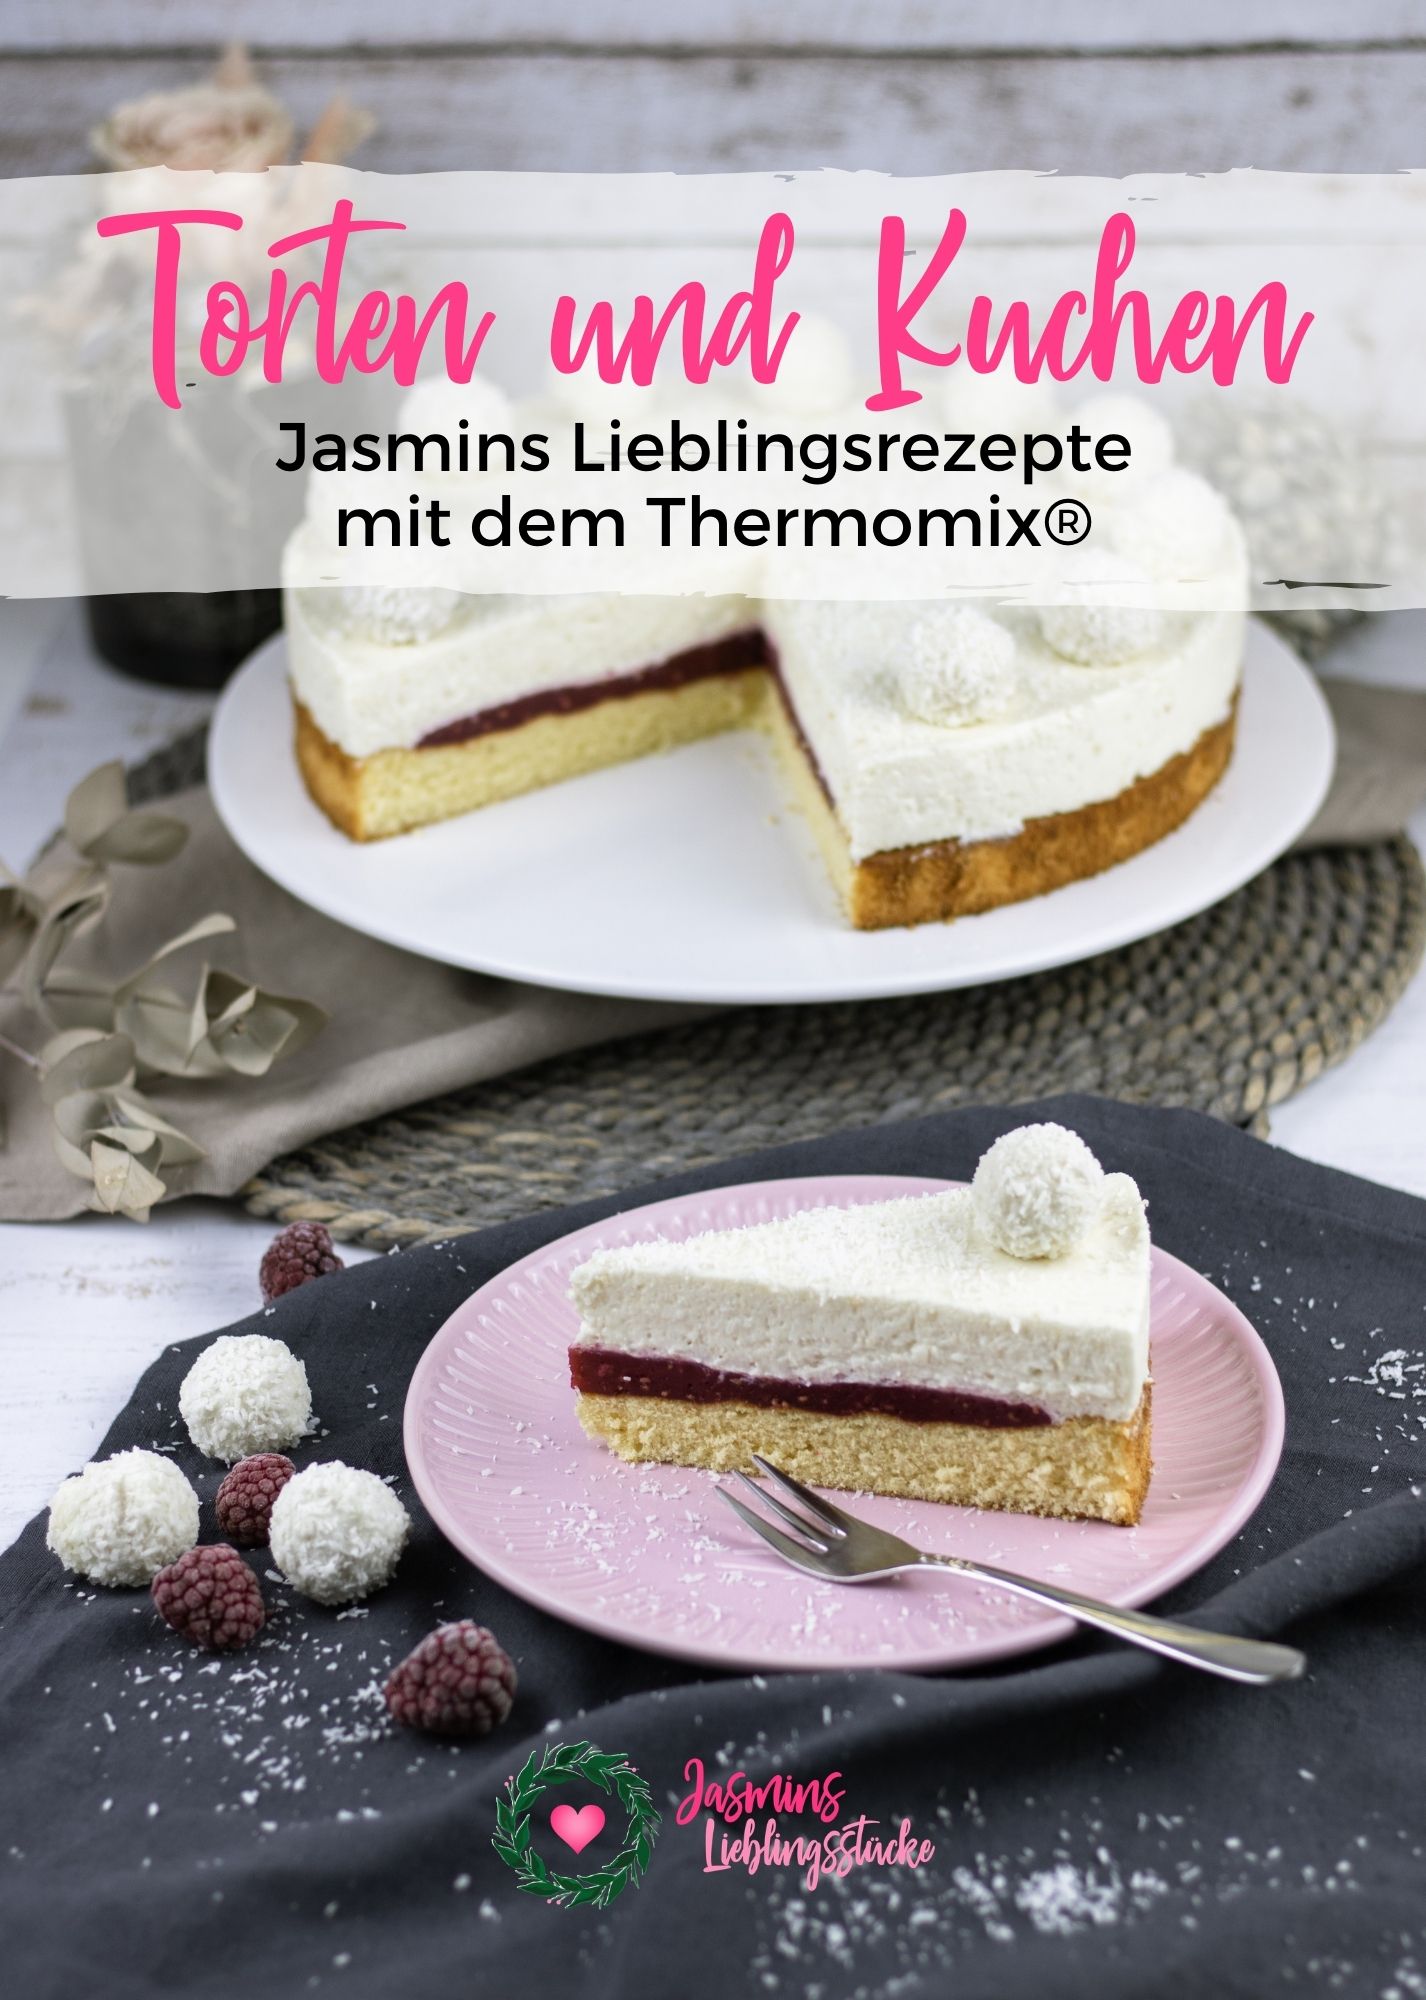 Jasmins Lieblingsstücke: Torten und Kuchen mit dem Thermomix® by Jasmin Friedrich